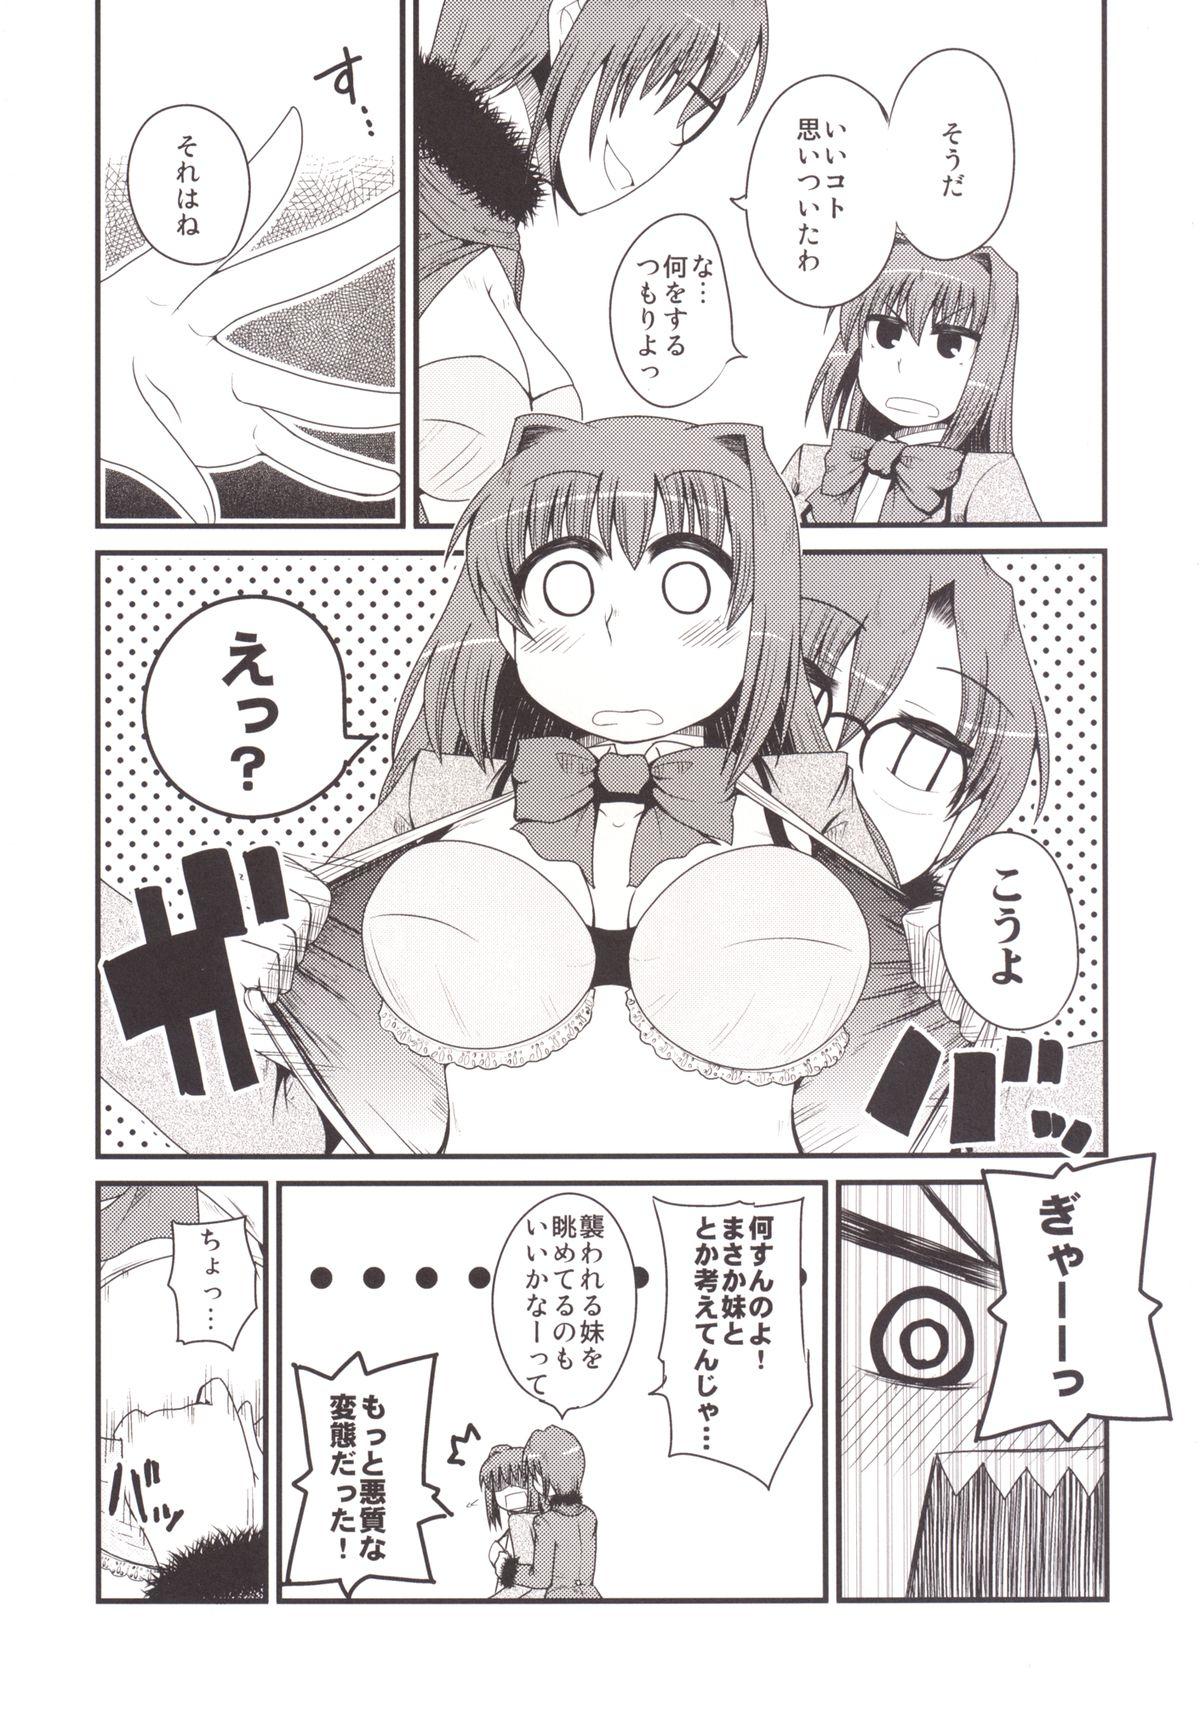 White Girl Ittsu Main 2 - Mahou tsukai no yoru Adult - Page 9